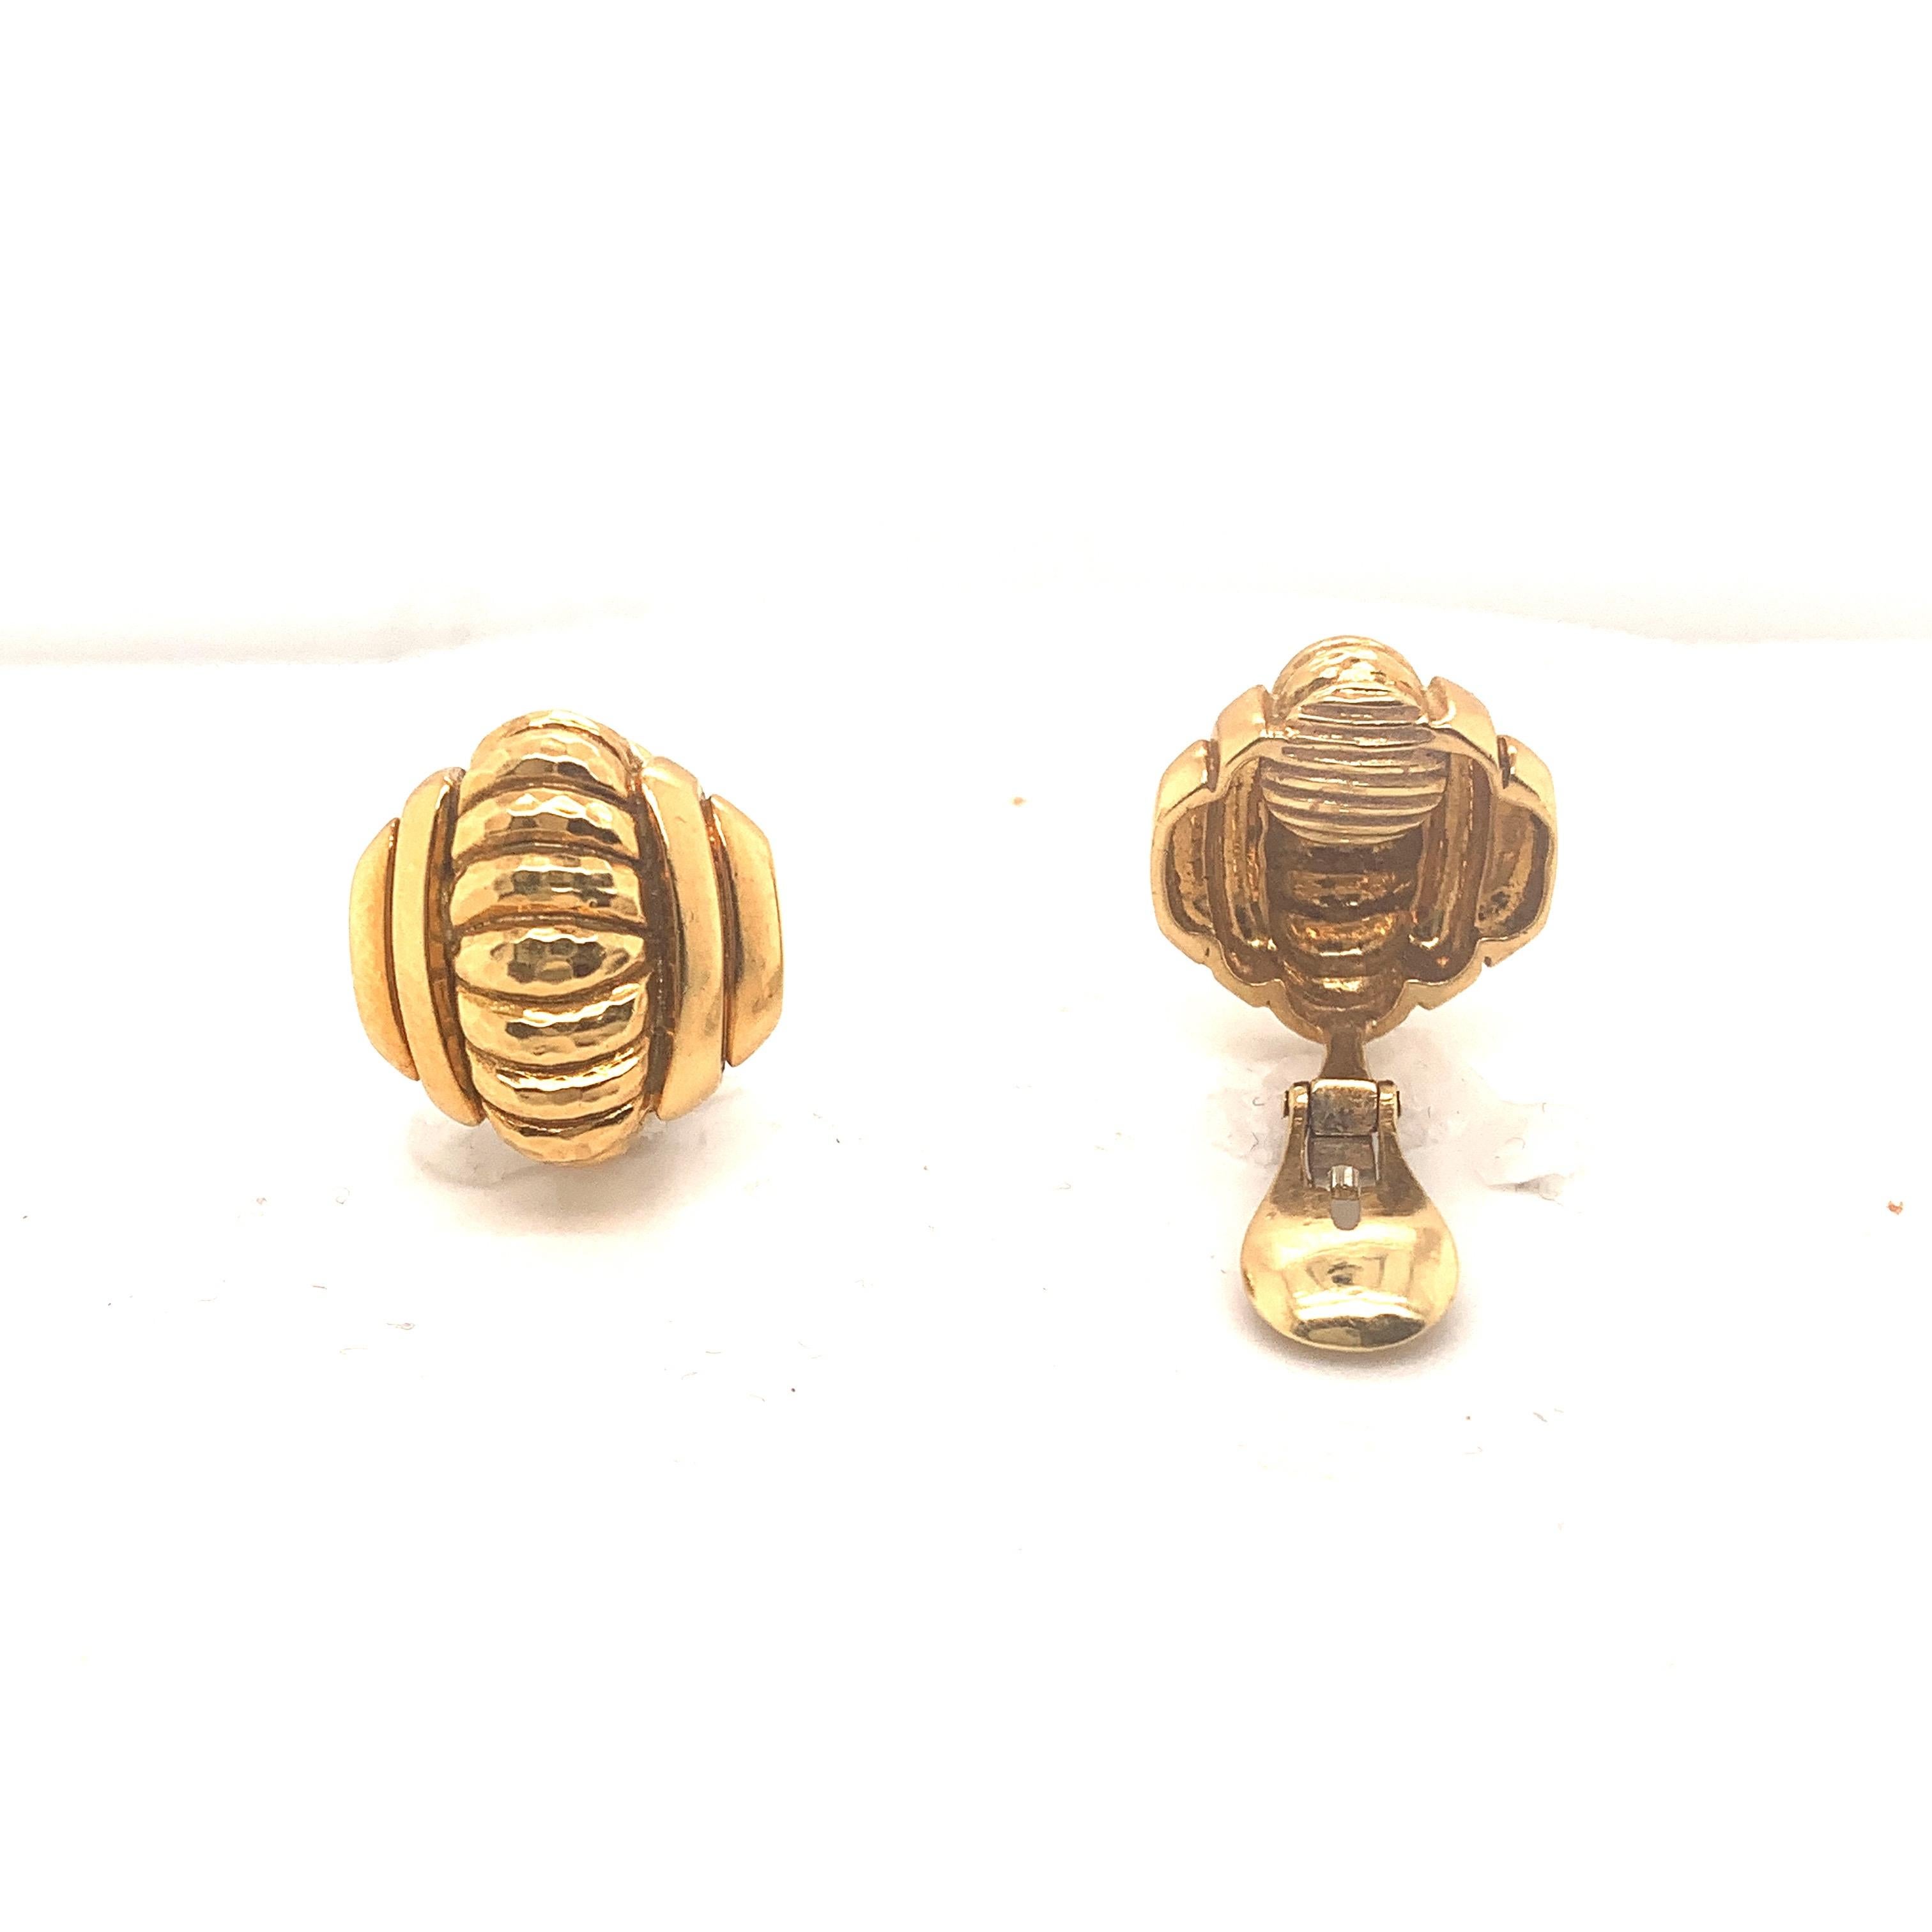 18k Gold gehämmert vintage David Webb Clip-Ohrringe.
Gestempeltes Webb
Besichtigungen in unserem Großhandelsbüro in NYC nach Vereinbarung möglich.
